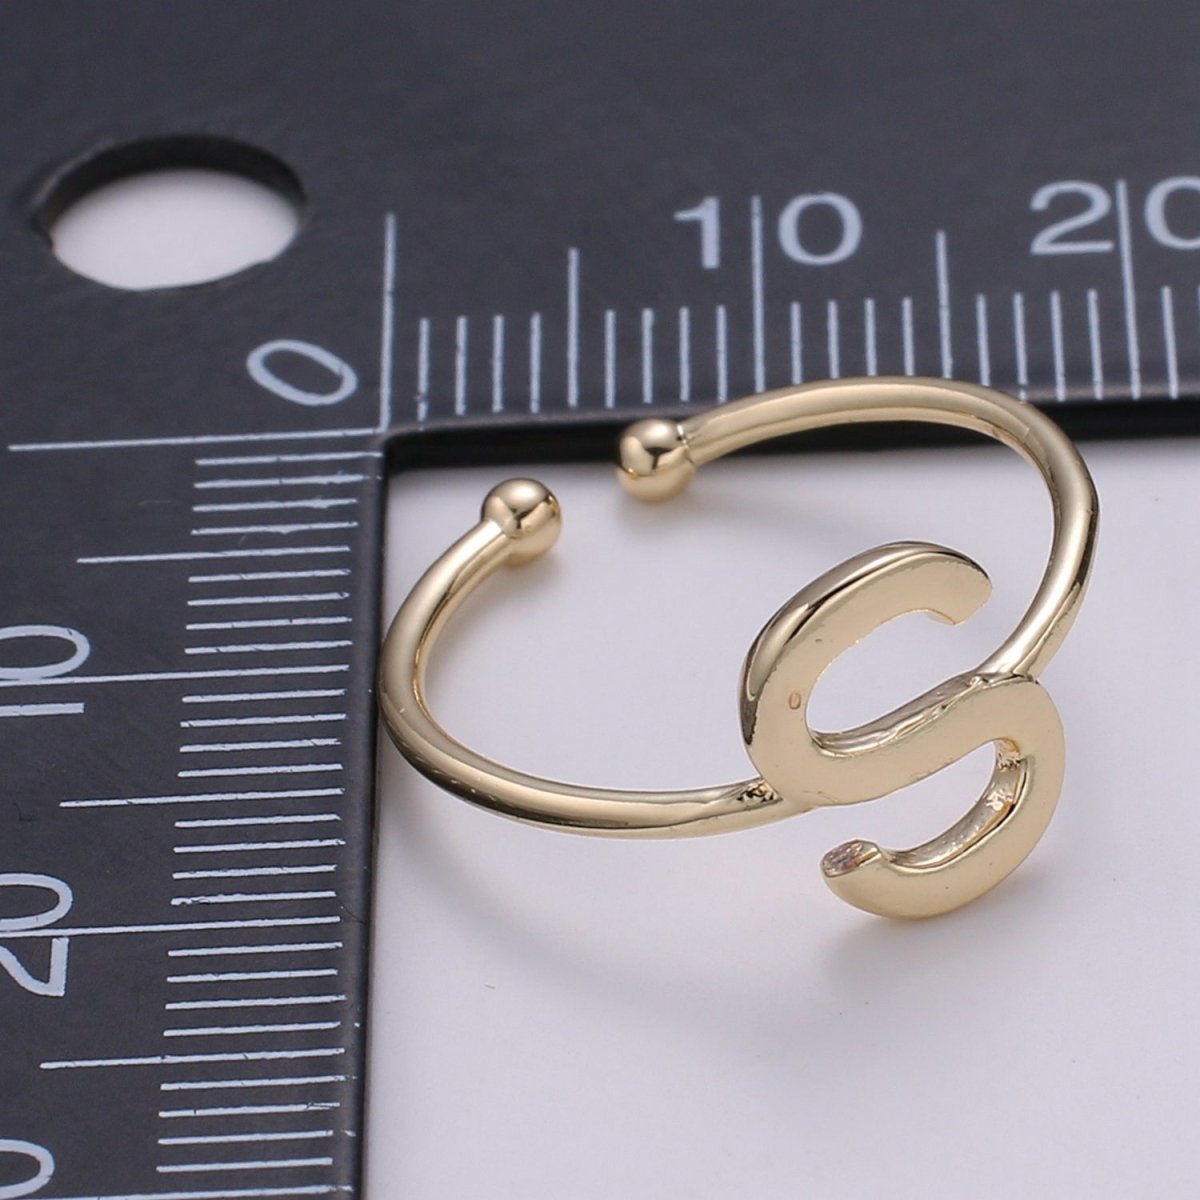 18K Gold Filled "S" Adjustable Ring - R284 - DLUXCA